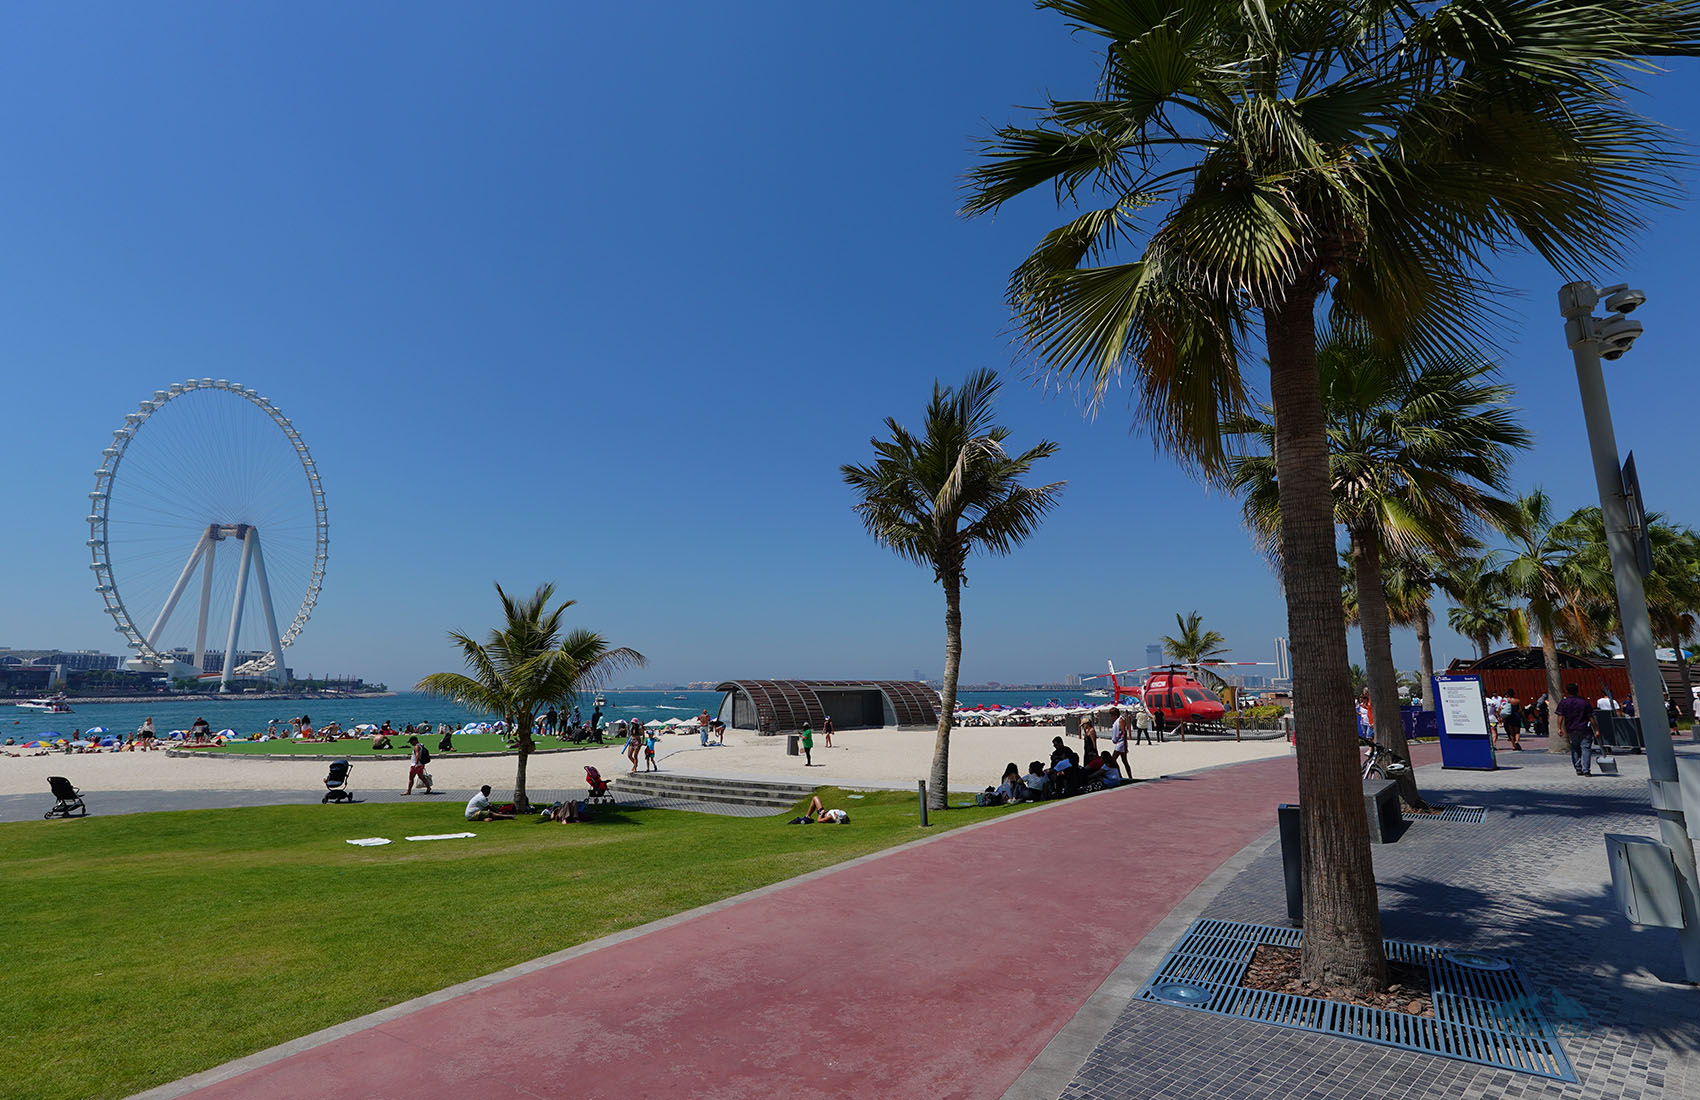 Marina beach and ain Dubai